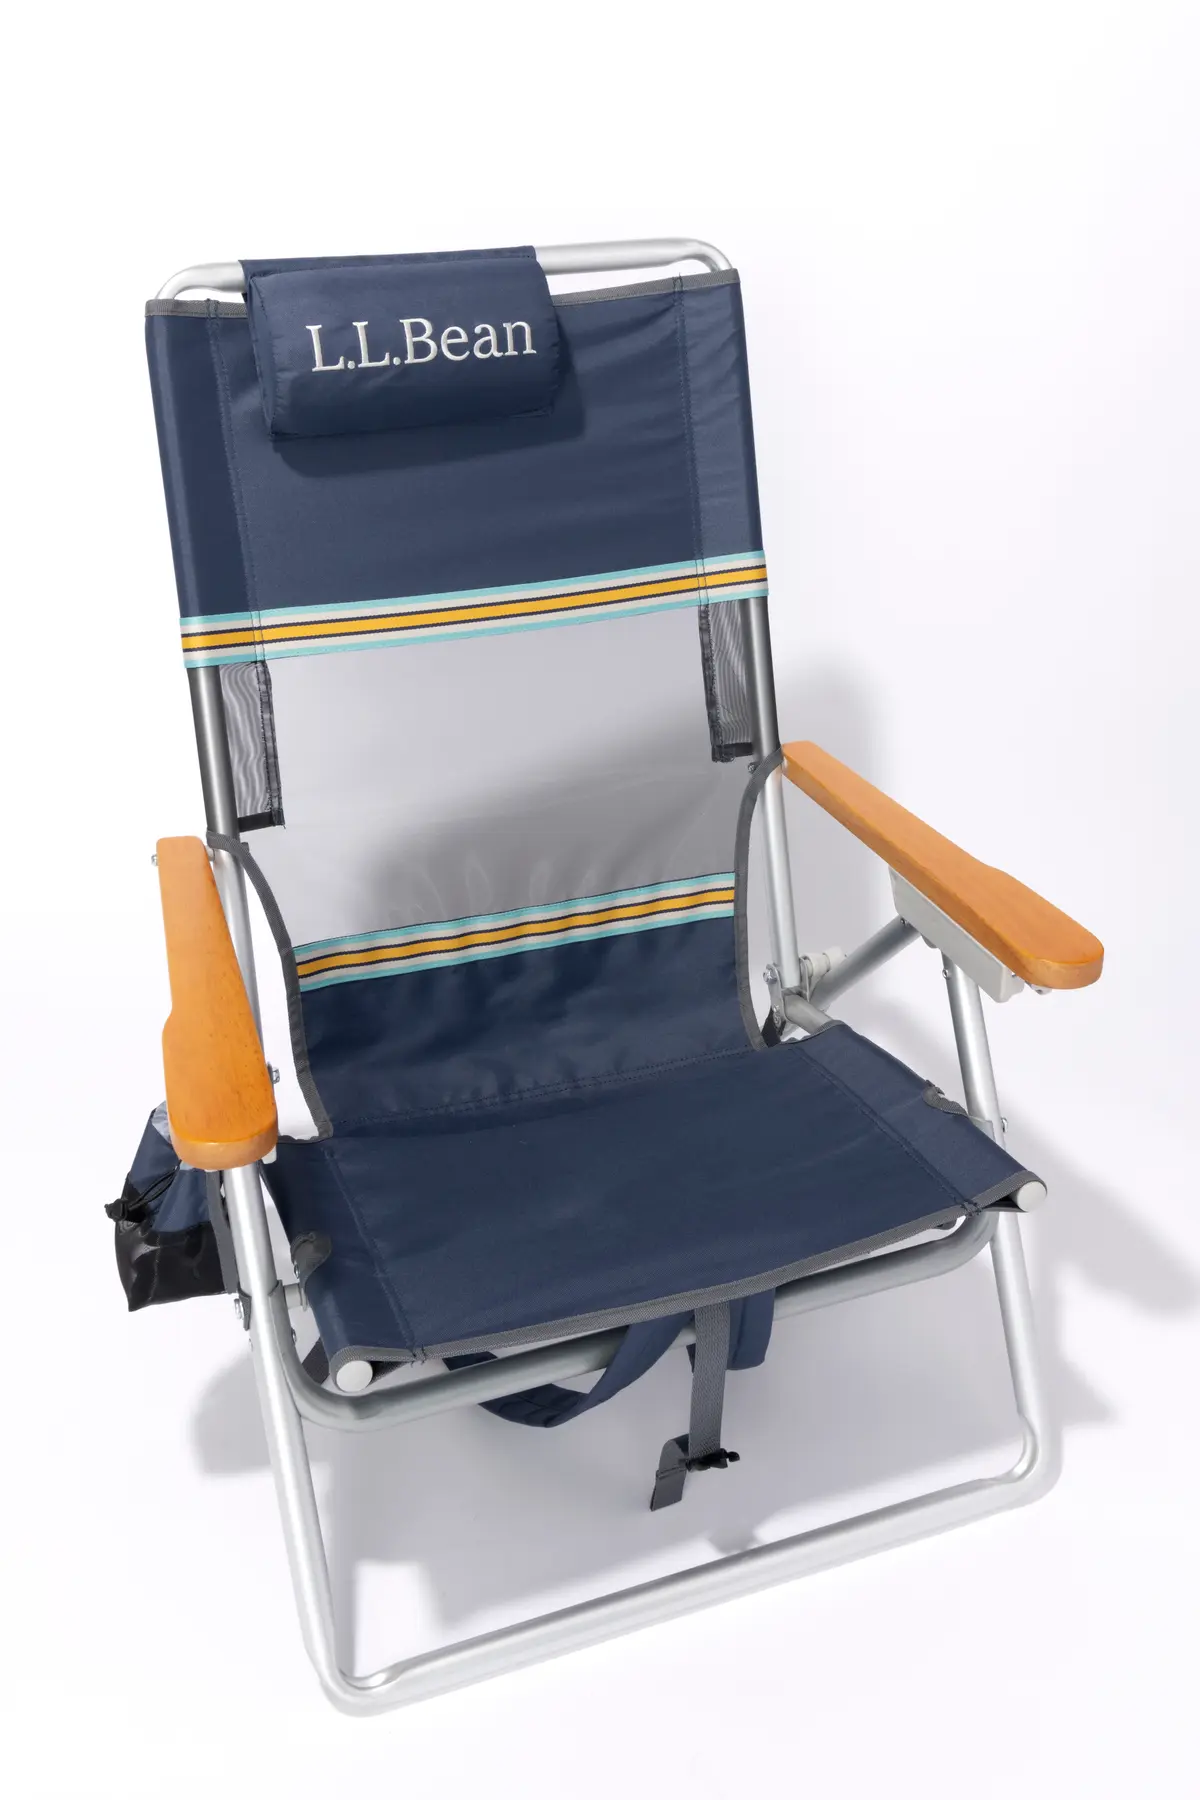 『L.L.Bean』の椅子の撮りおろし画像